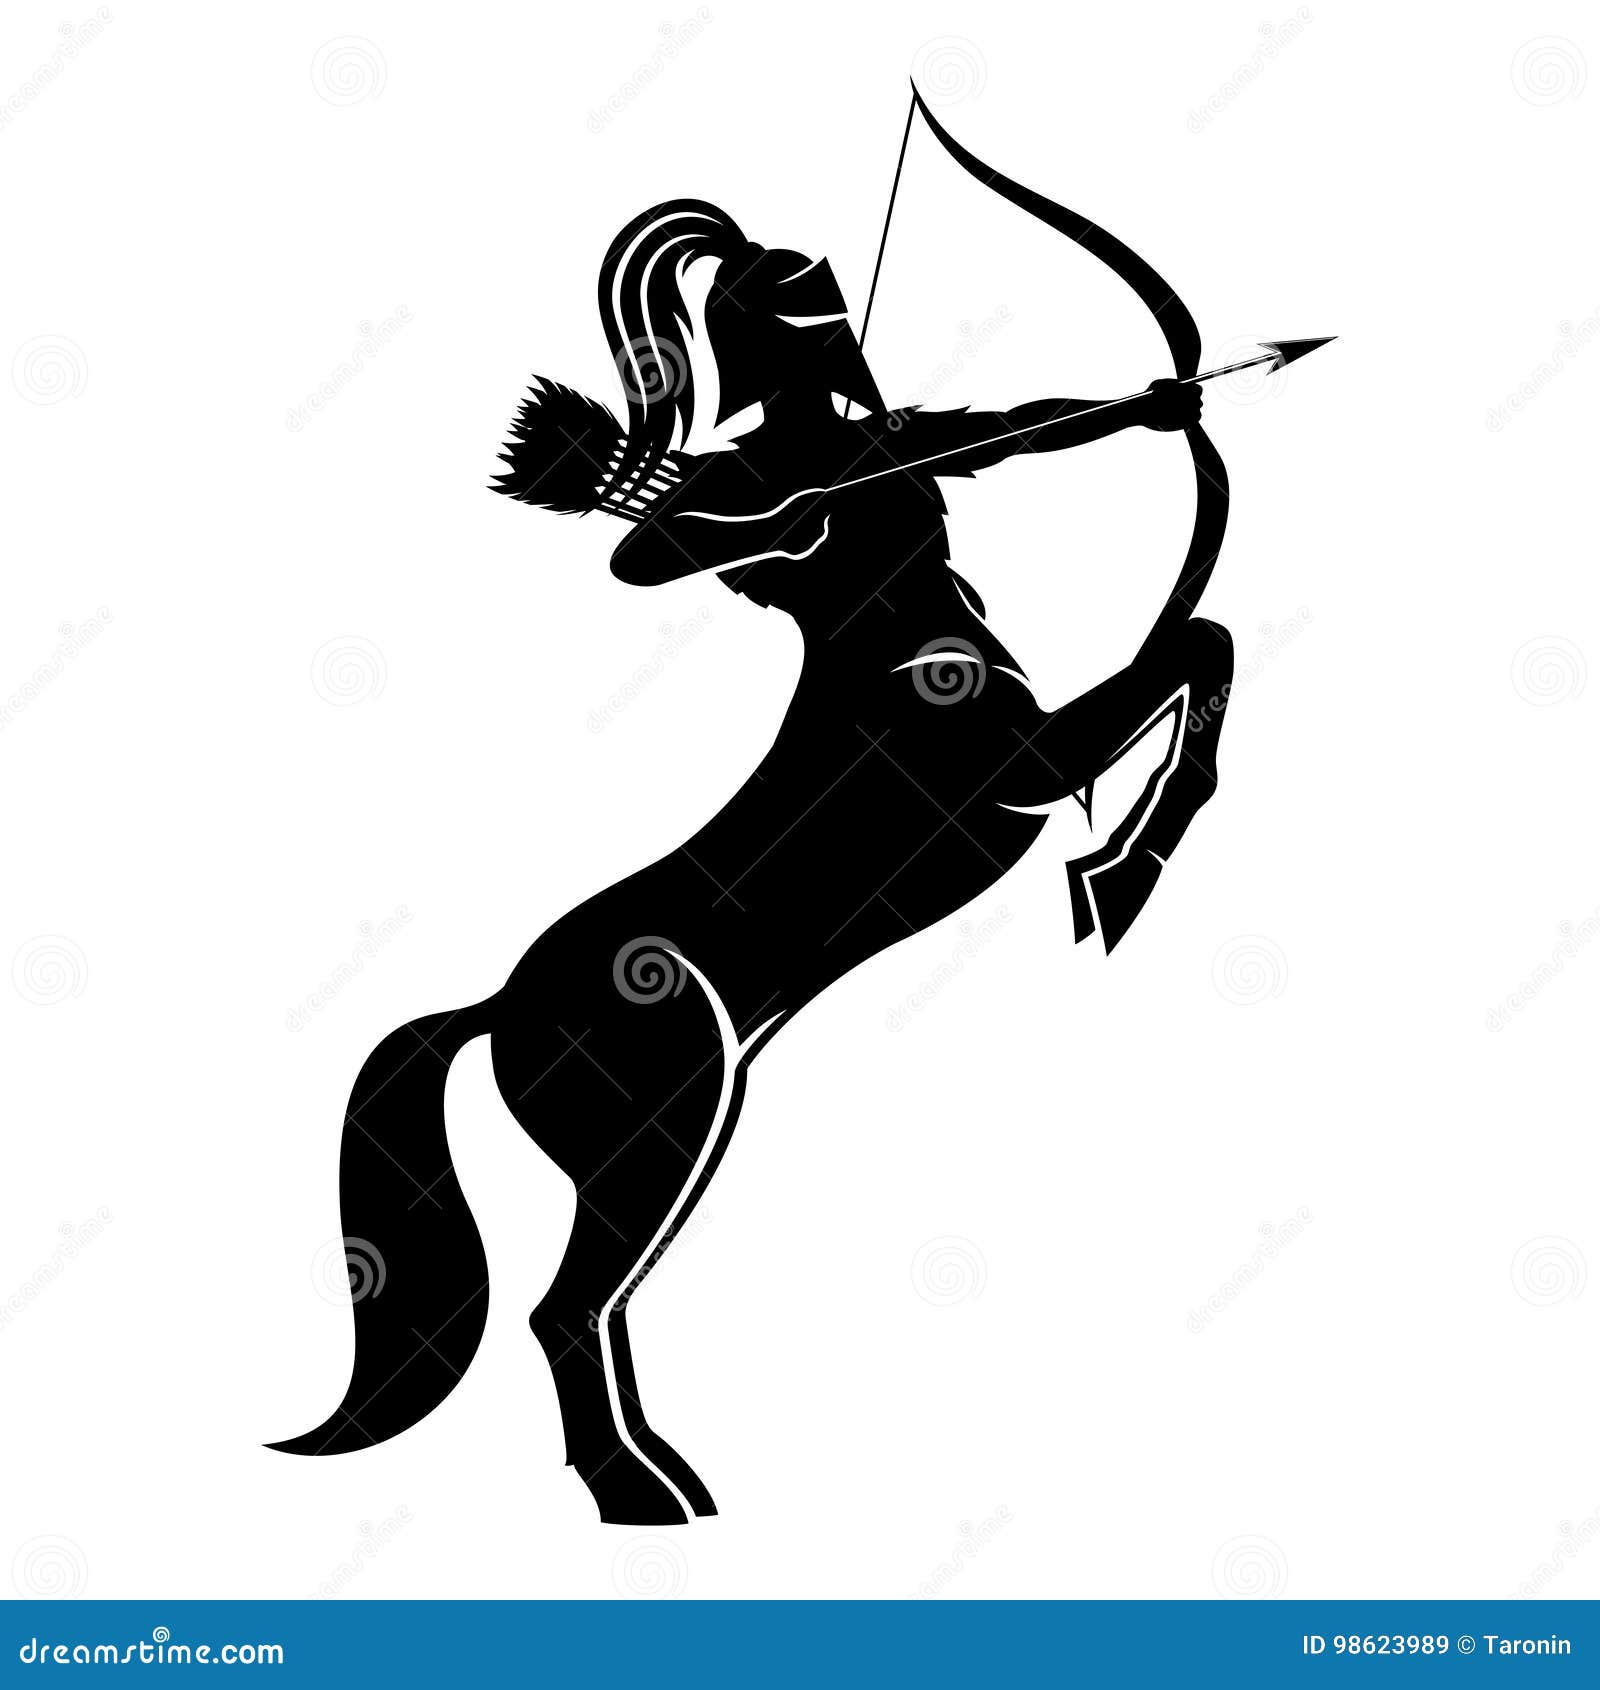 centaur archer sign.